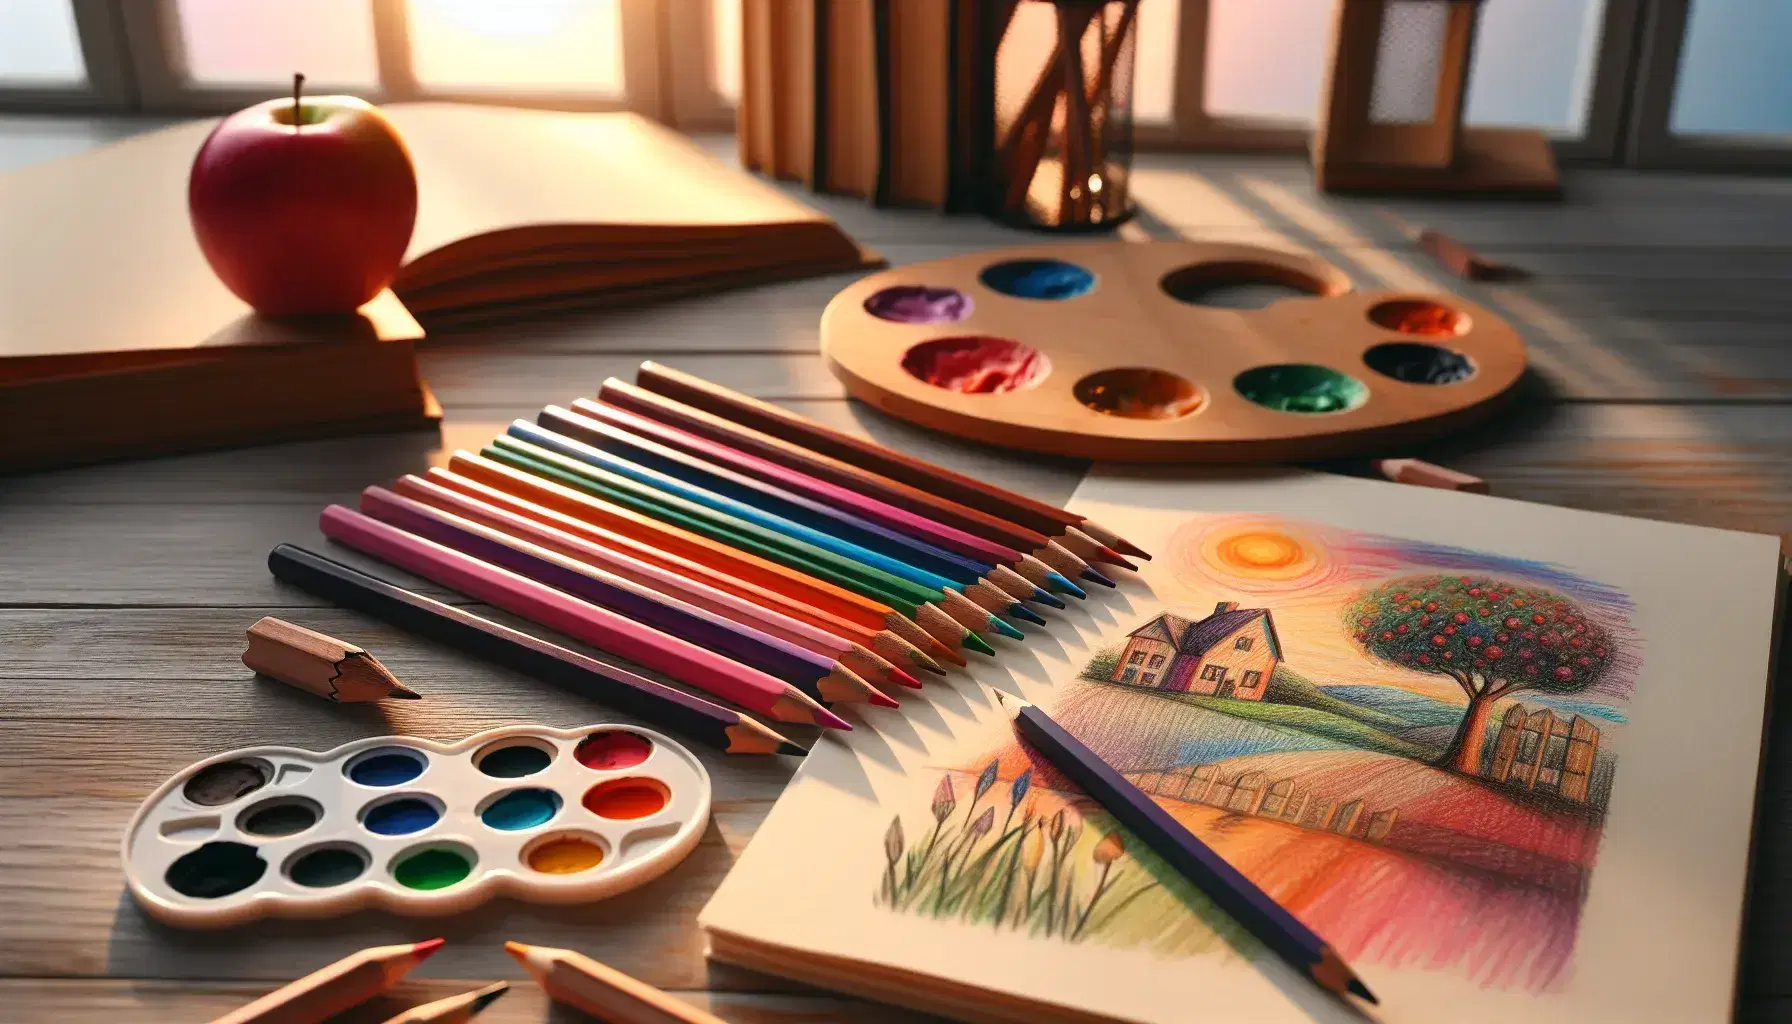 Matite colorate ordinate su tavolo di legno con tavolozza e schizzi di oggetti su carta, sfondo con libro aperto sfocato.